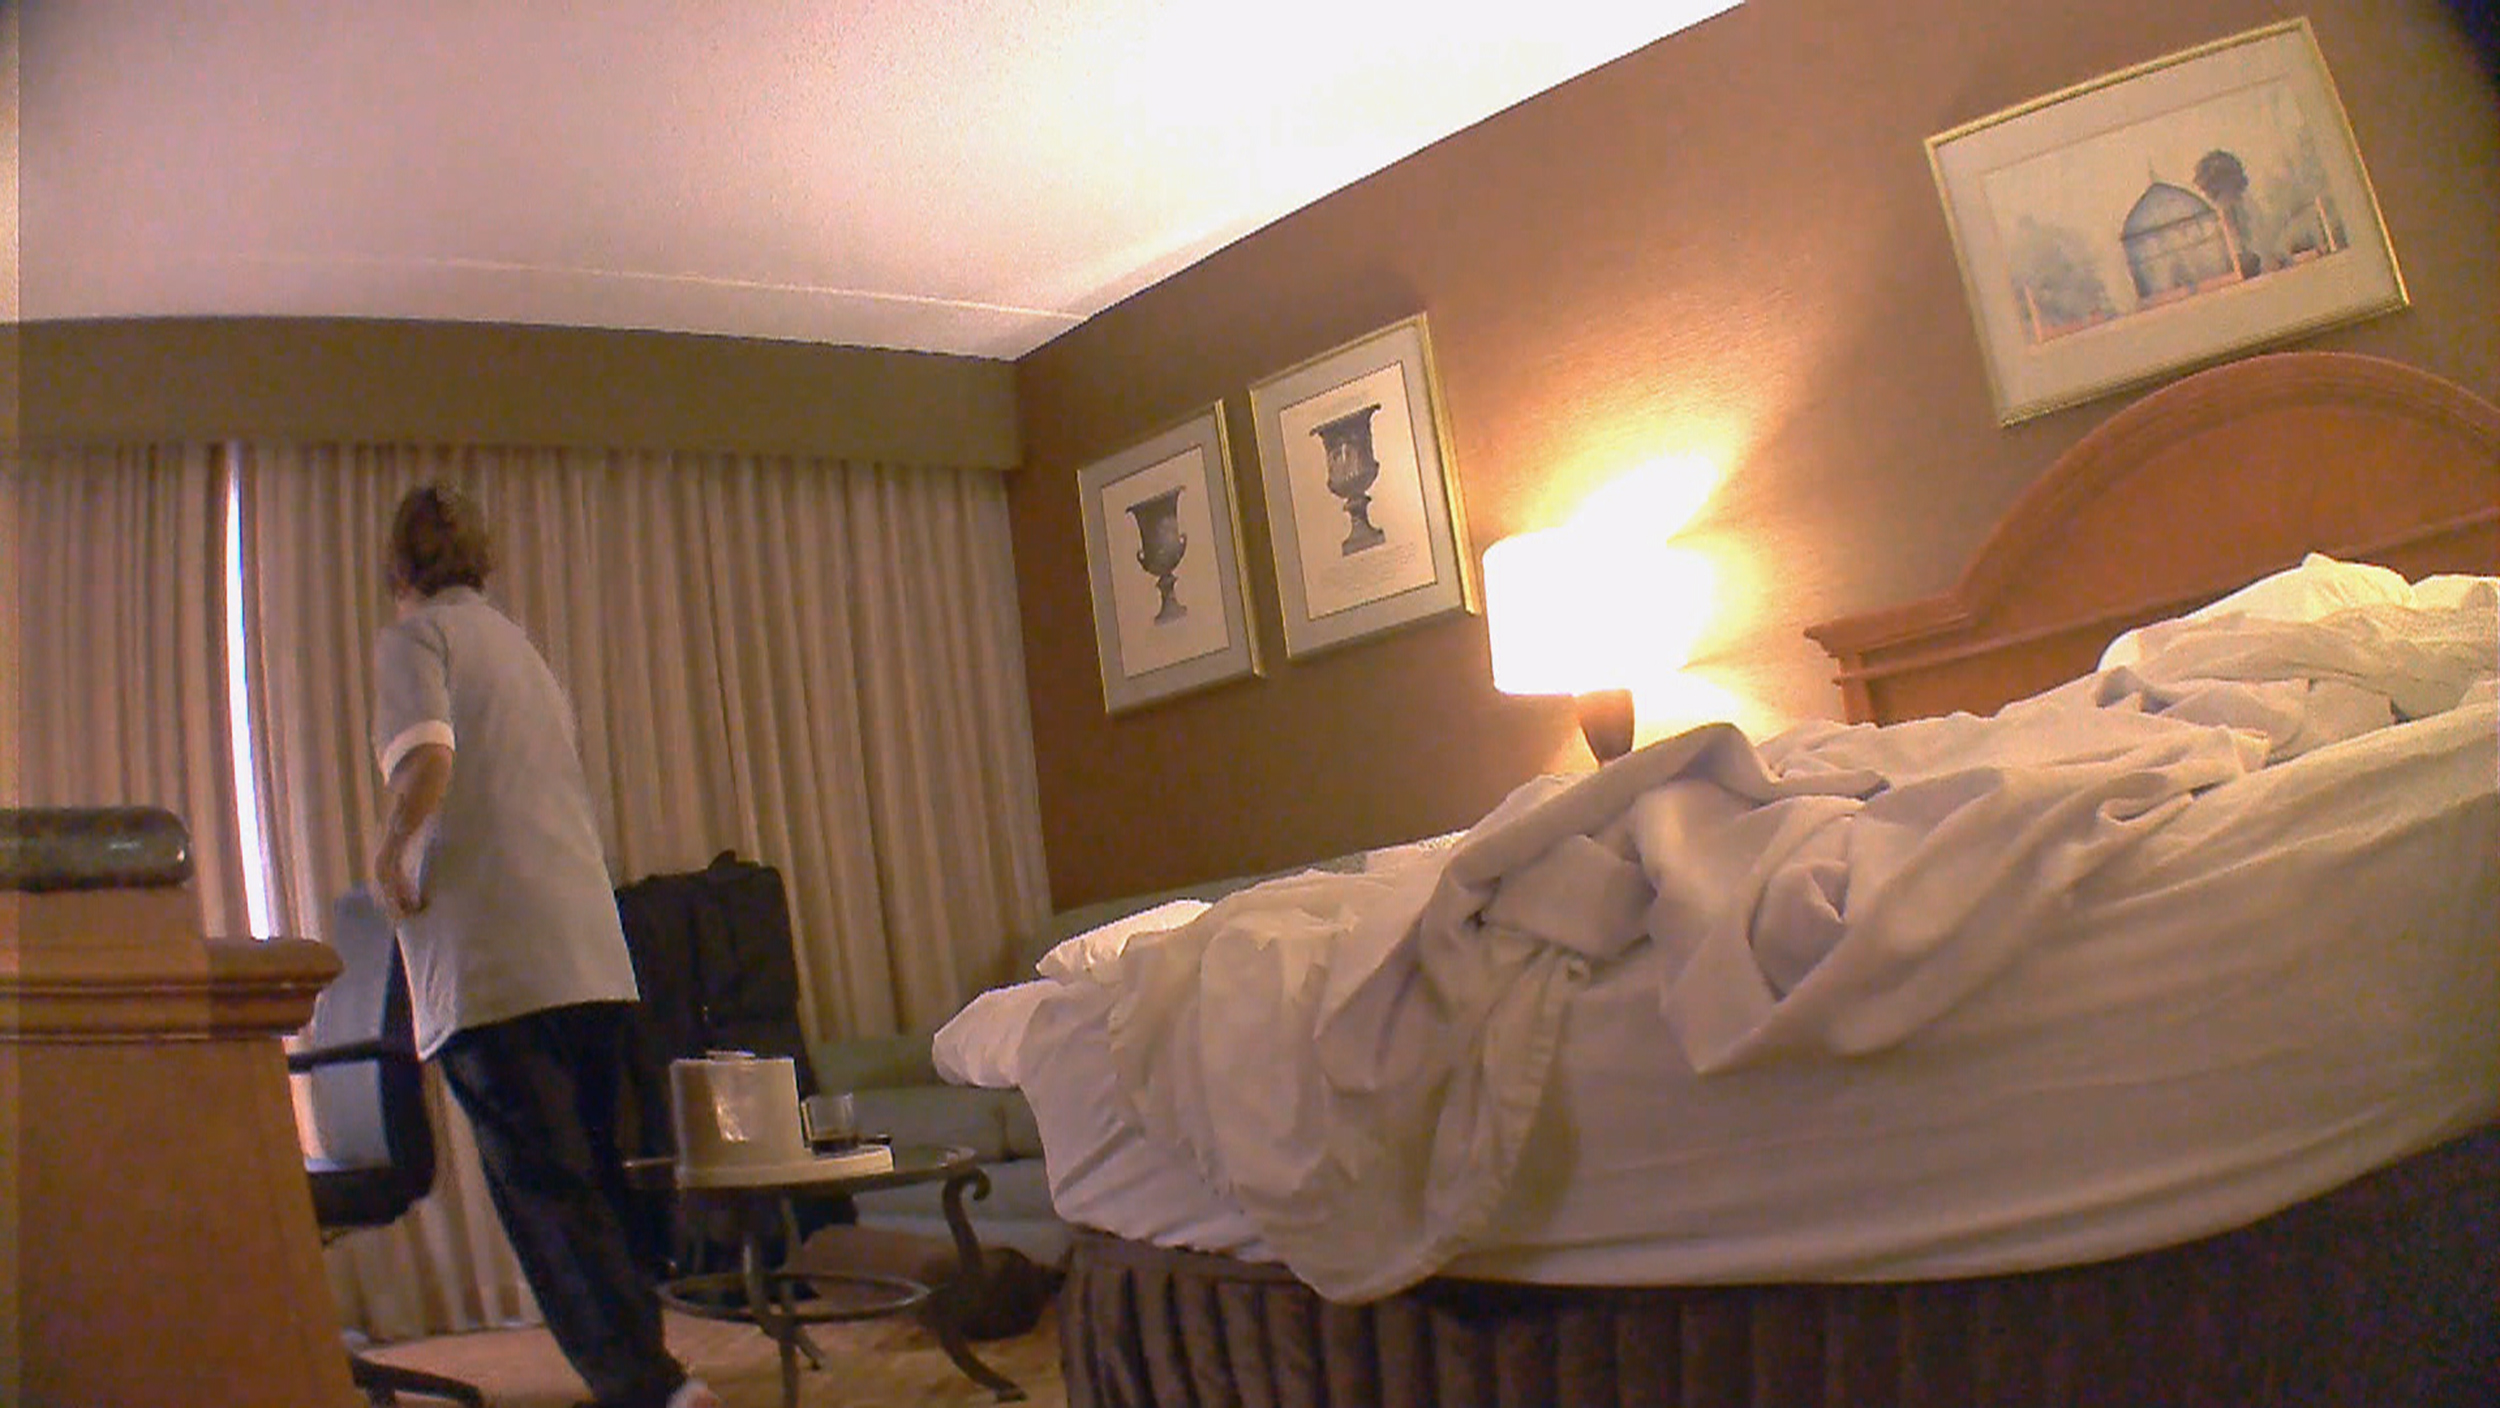 hidden bedroom cam tumblr xxx video pic